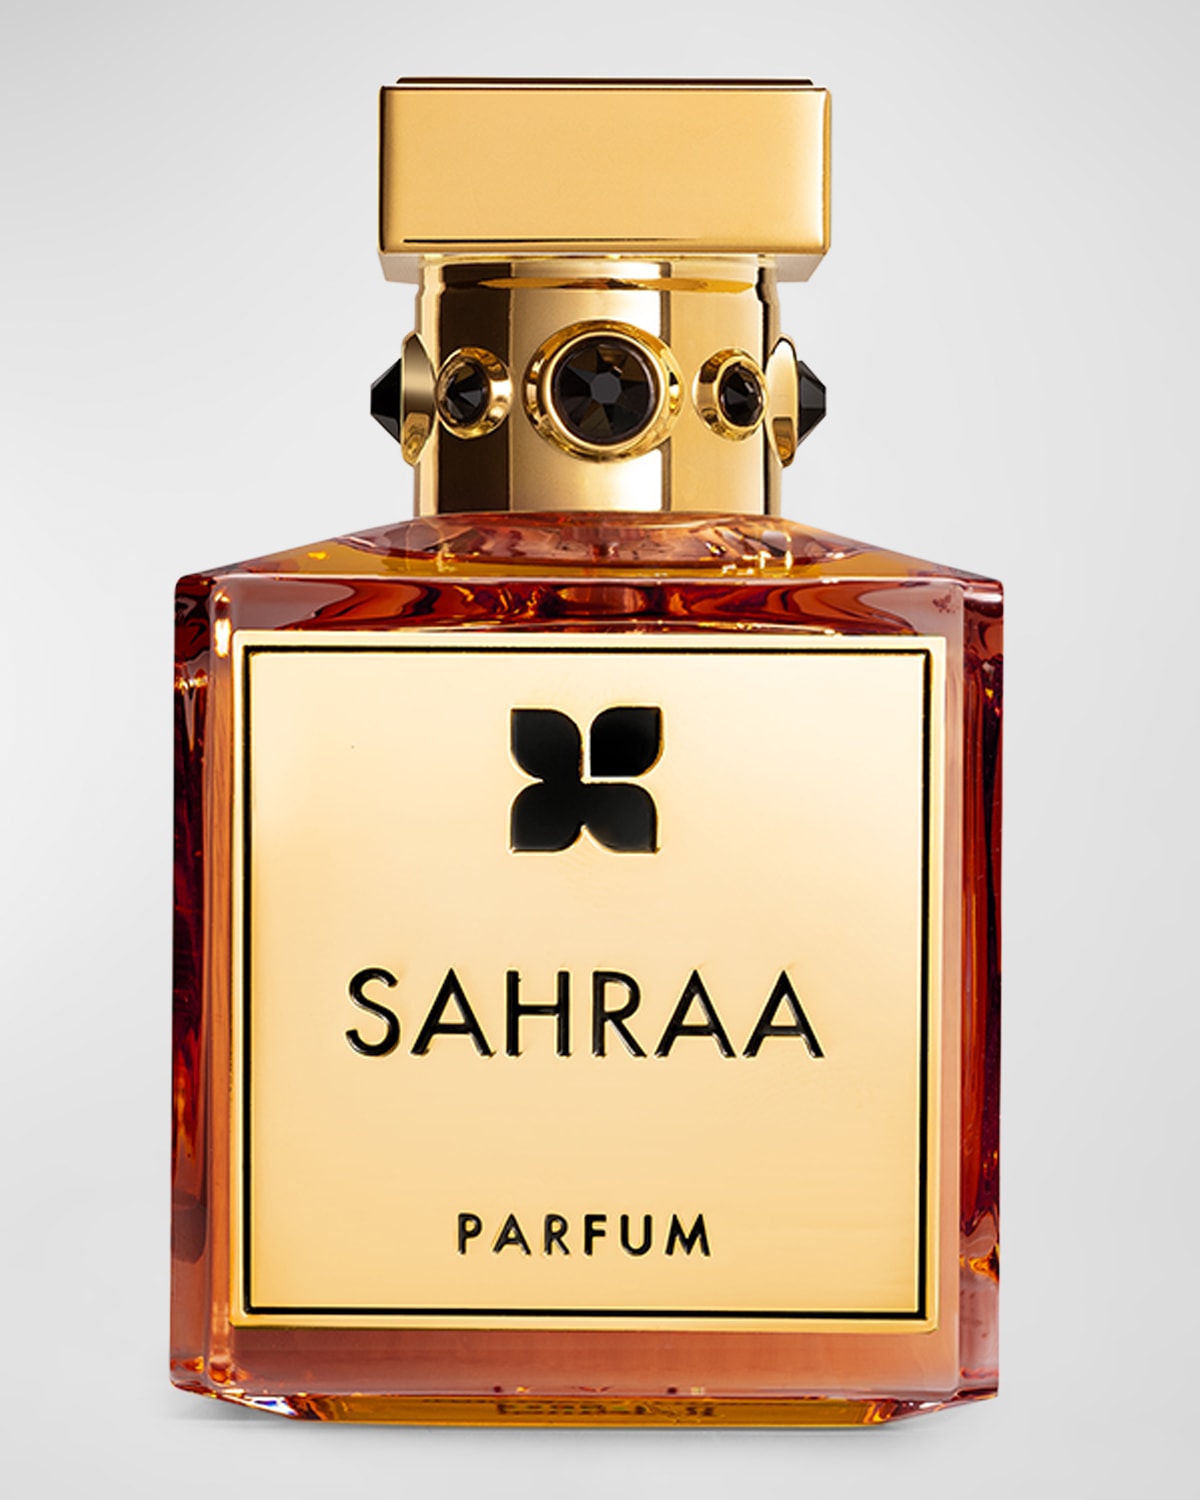 Fragrance Du Bois Sahraa Parfum, 3.4 Oz.